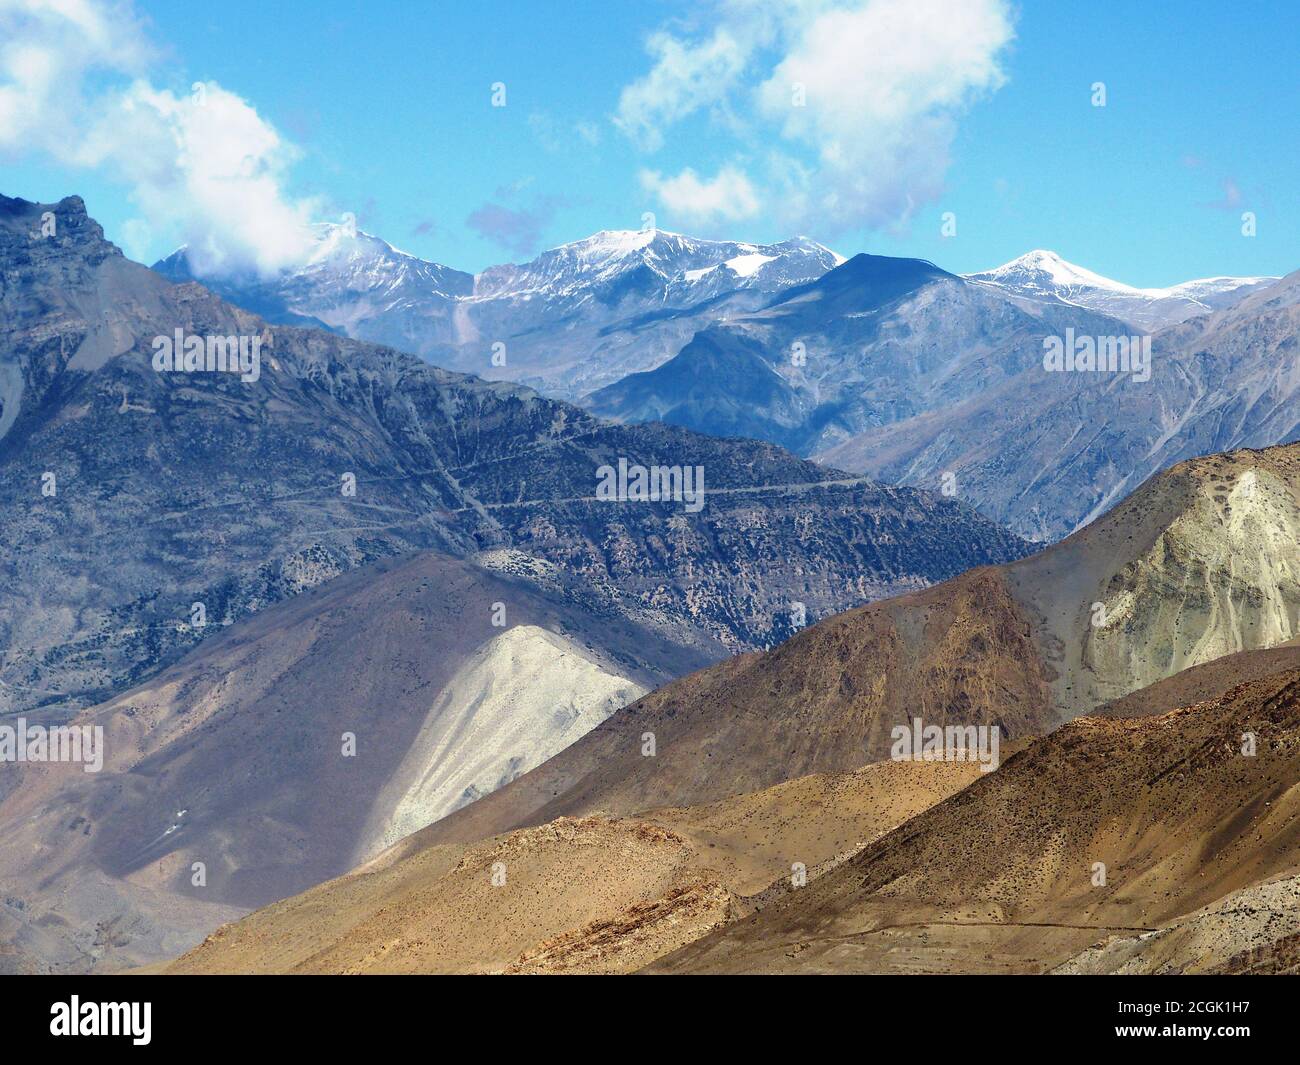 Montagnes himalayenne impressionnantes dans le quartier de Mustang, Népal, Asie. Paysage majestueux de l'Himalaya. Nature sauvage à Kingdom Lo. Himalaya népalais Banque D'Images